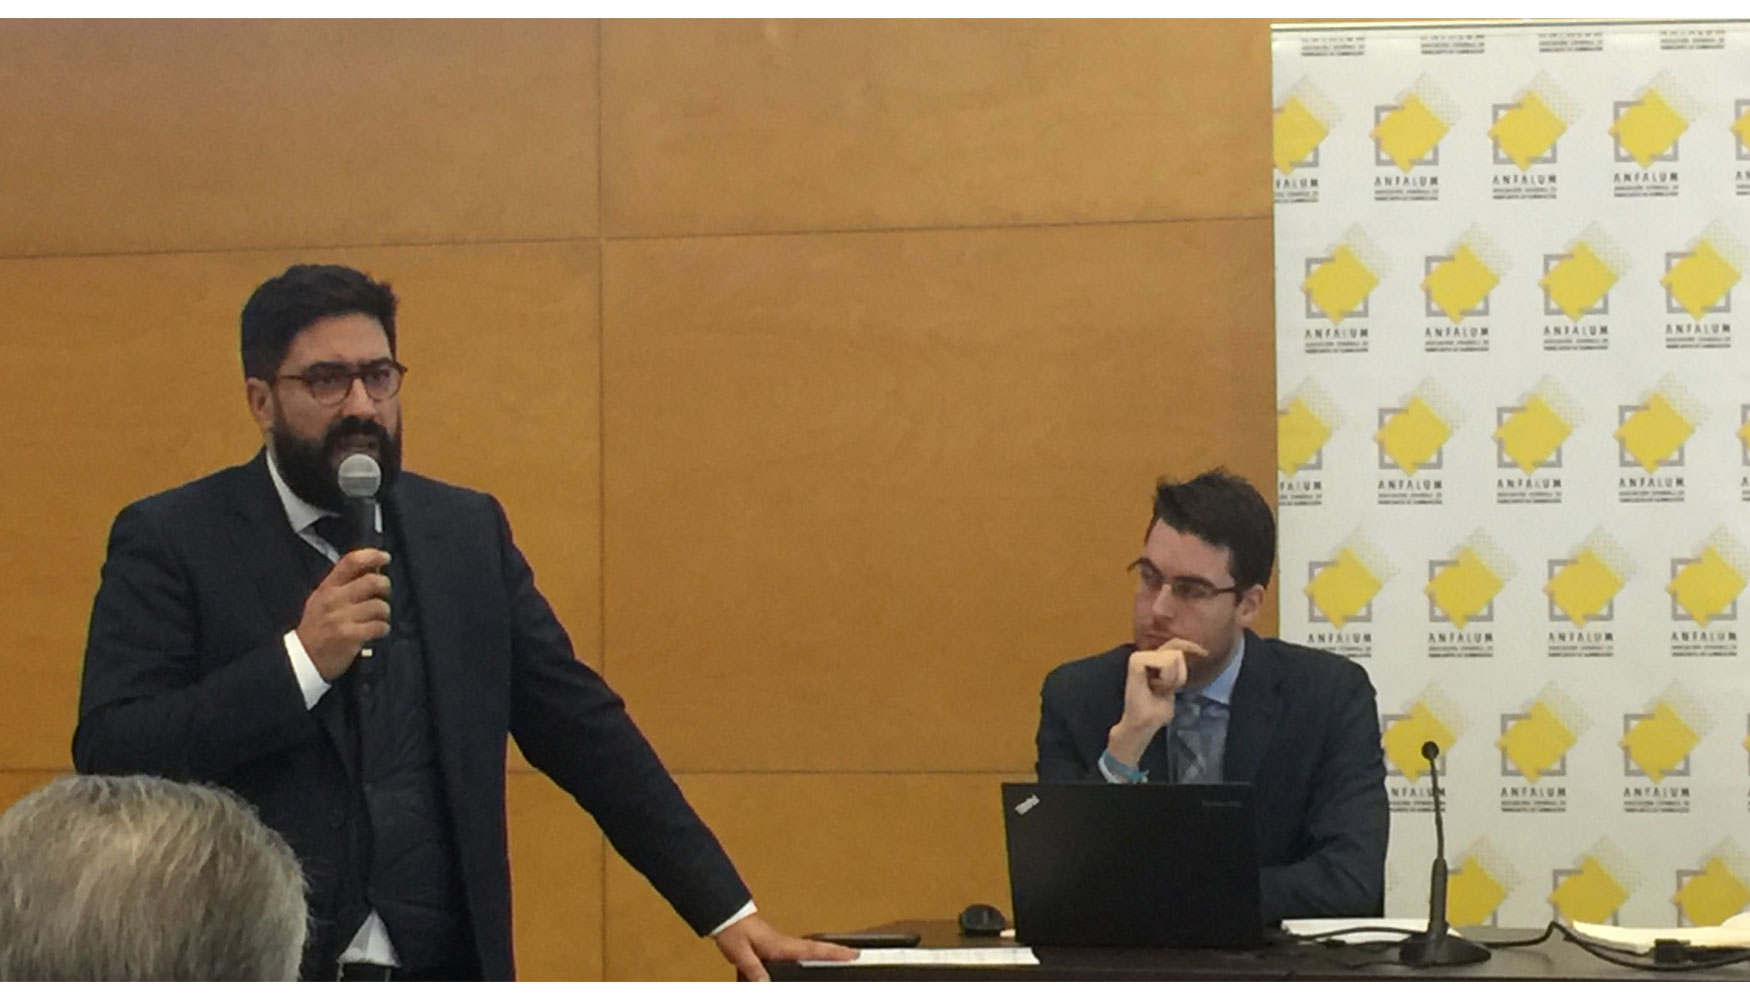 Ral Calleja present los datos de la prxima edicin de ePower&Building